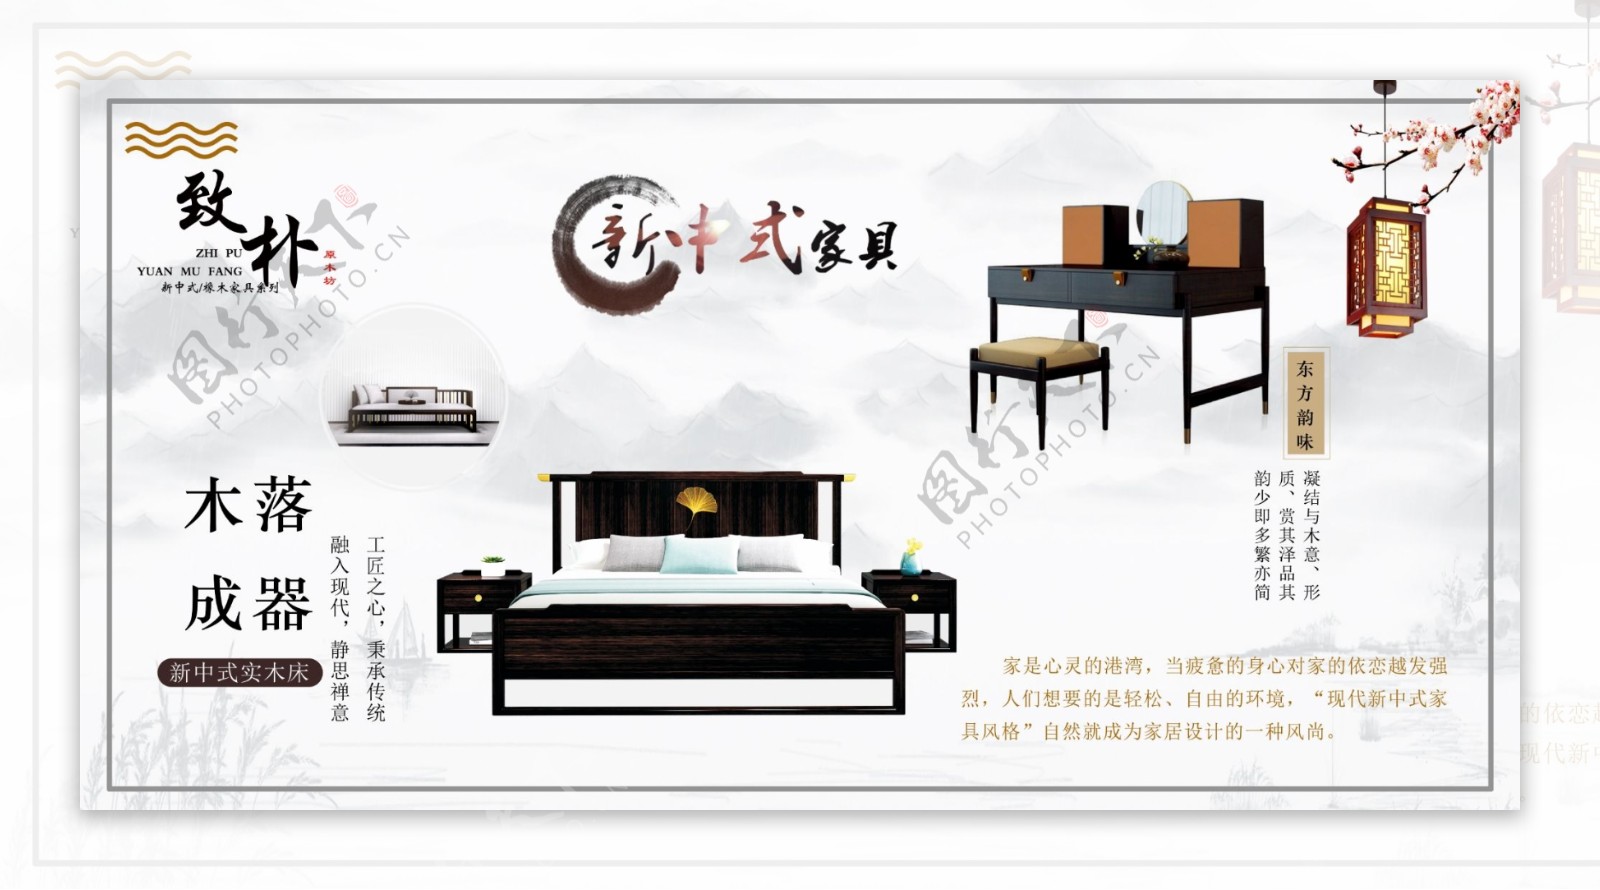 家具新中式海报